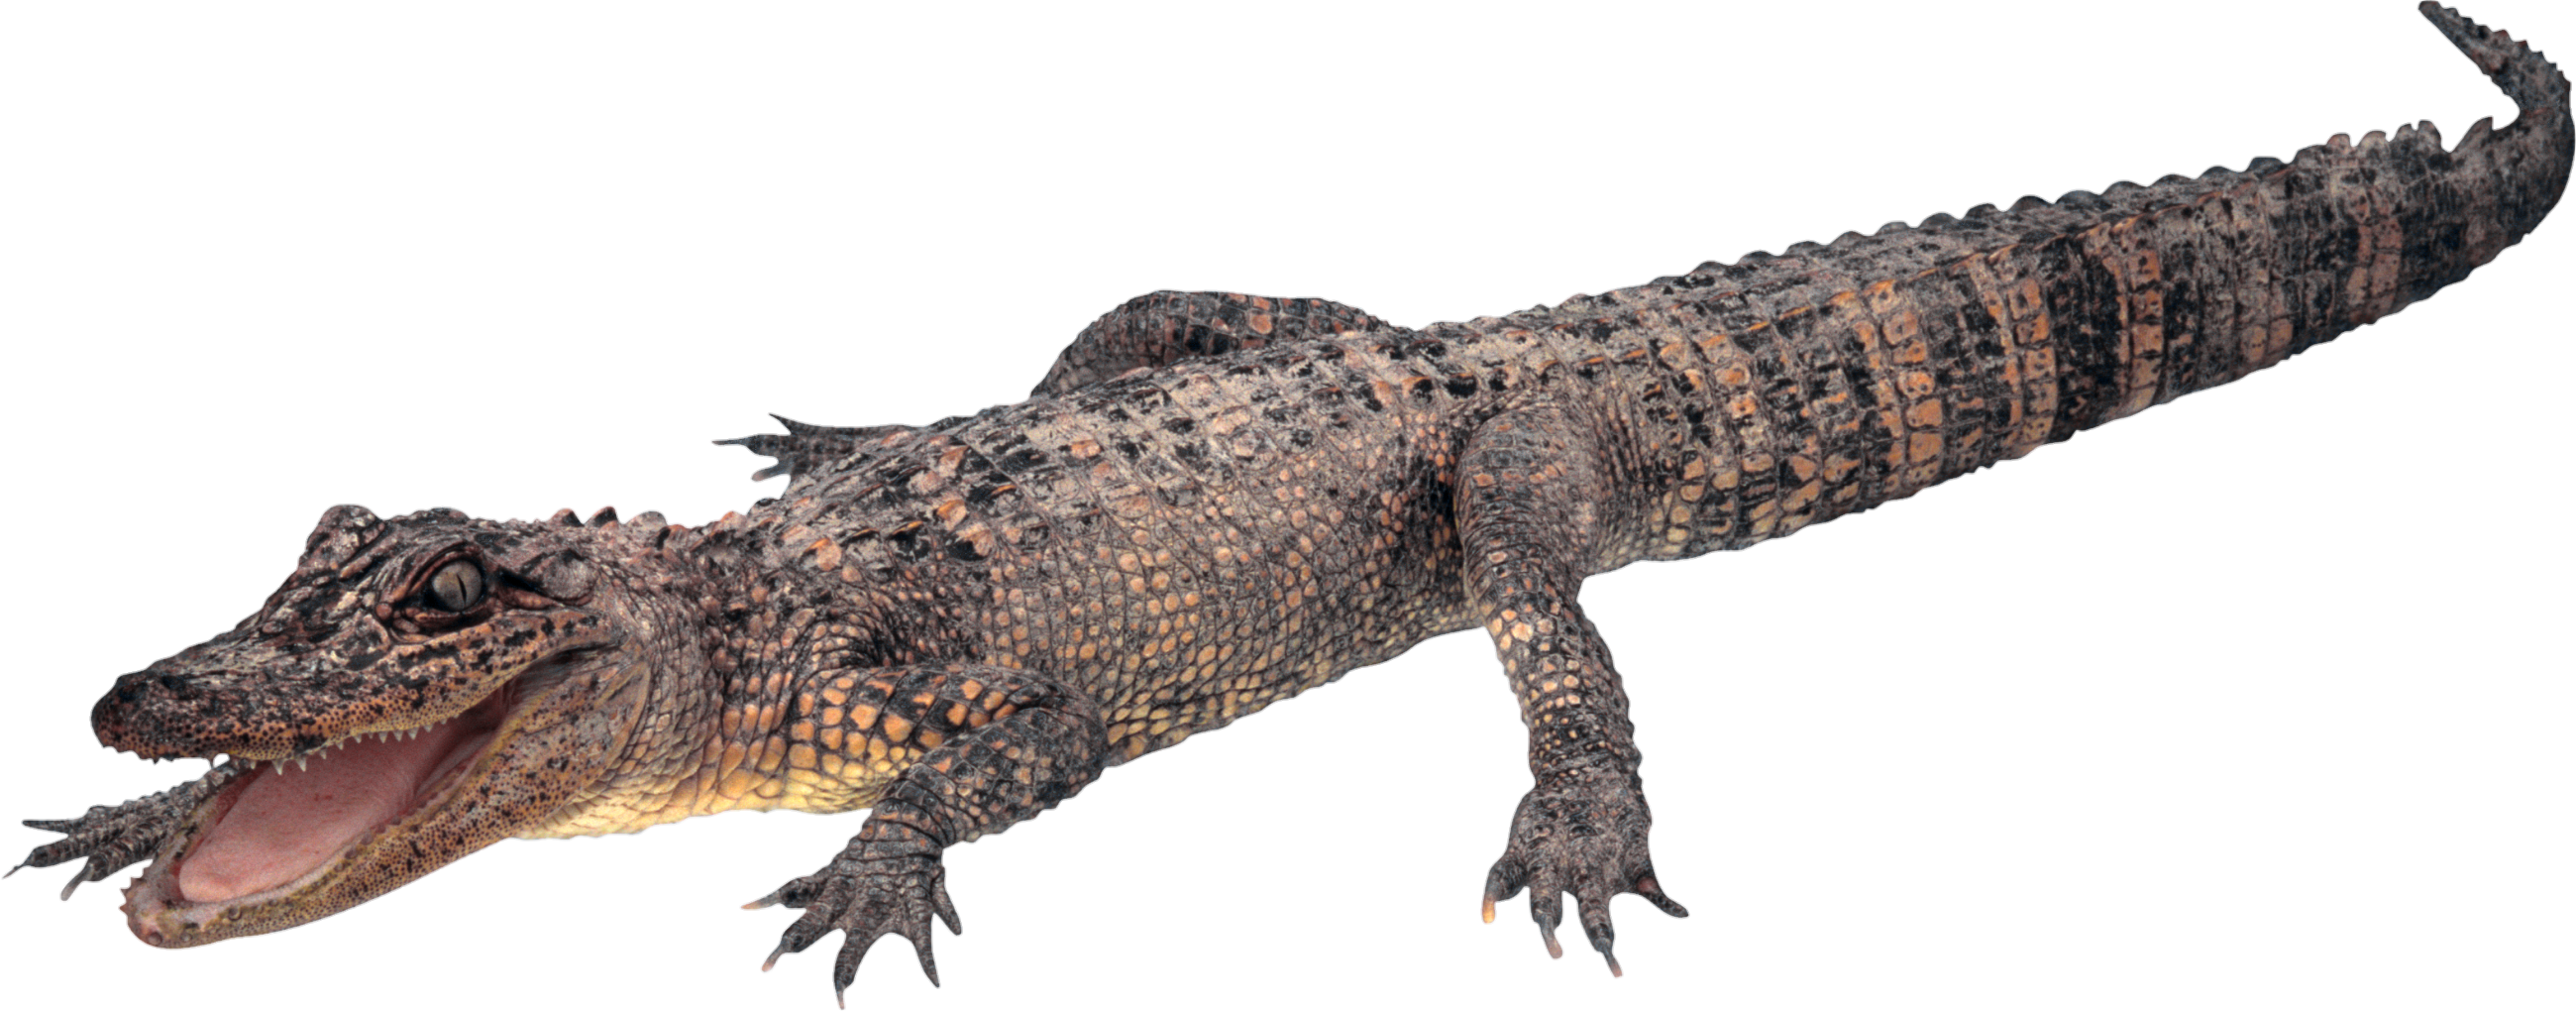 Crocodile-15